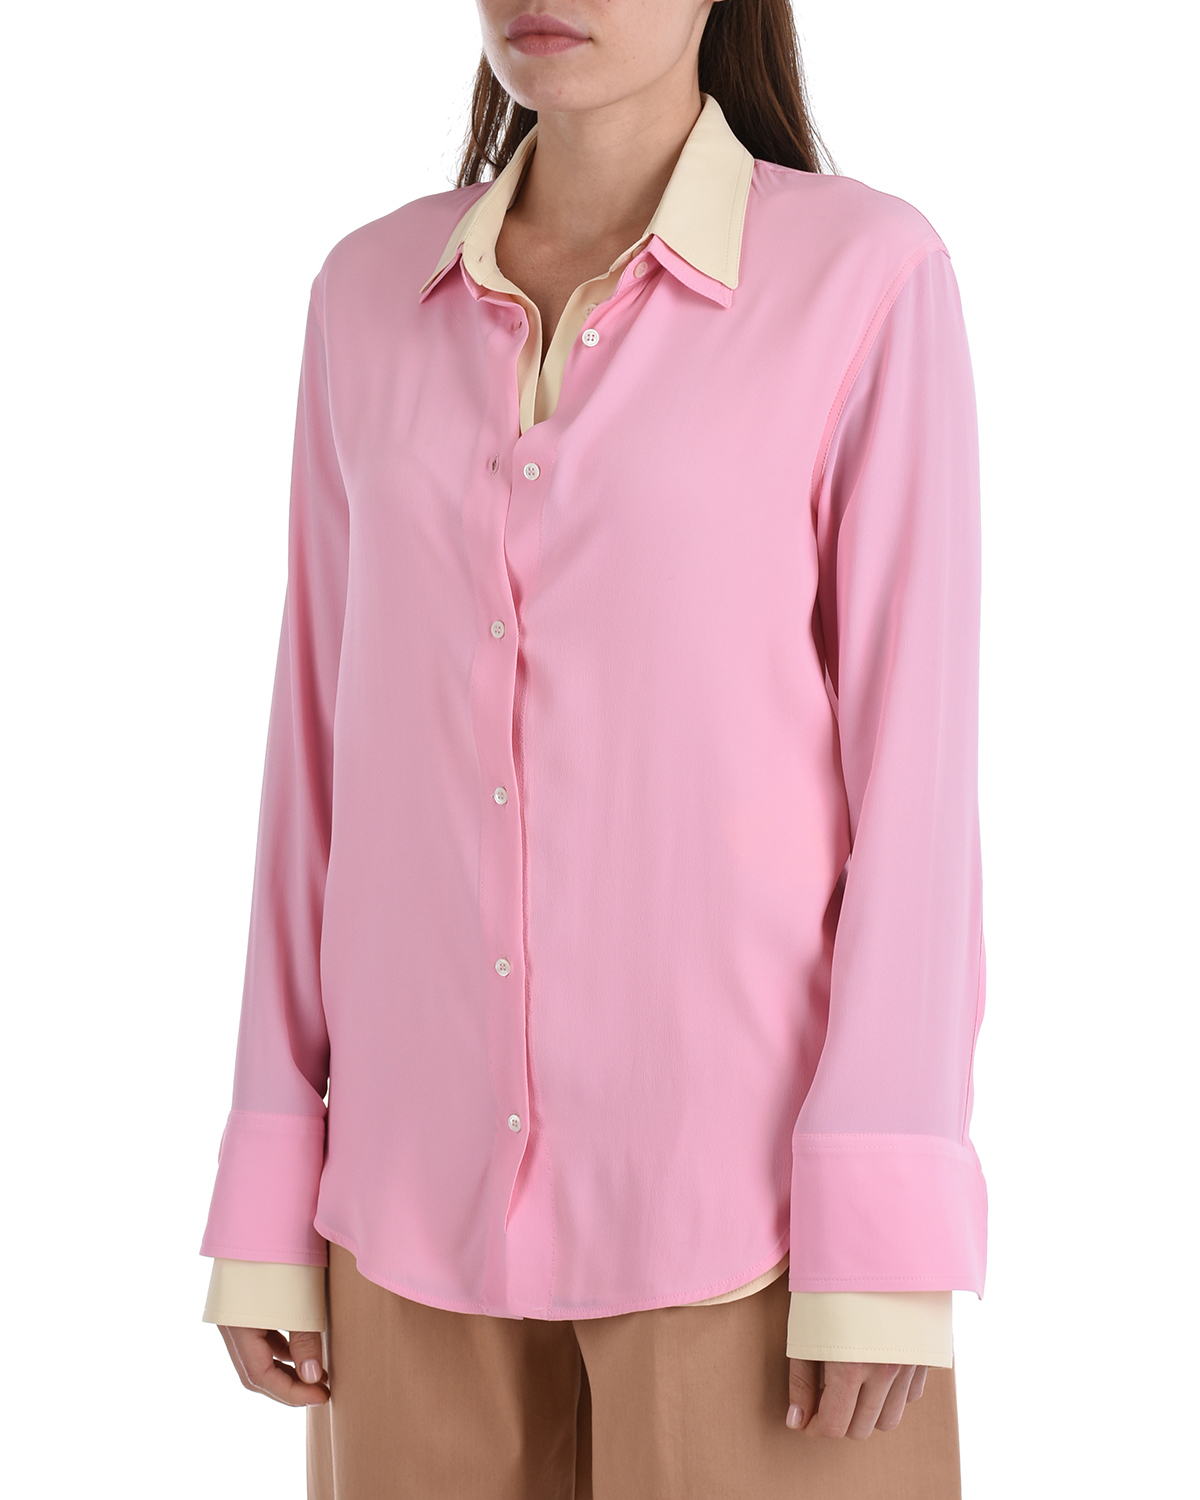 Двойная рубашка No. 21, размер 38, цвет розовый - фото 8